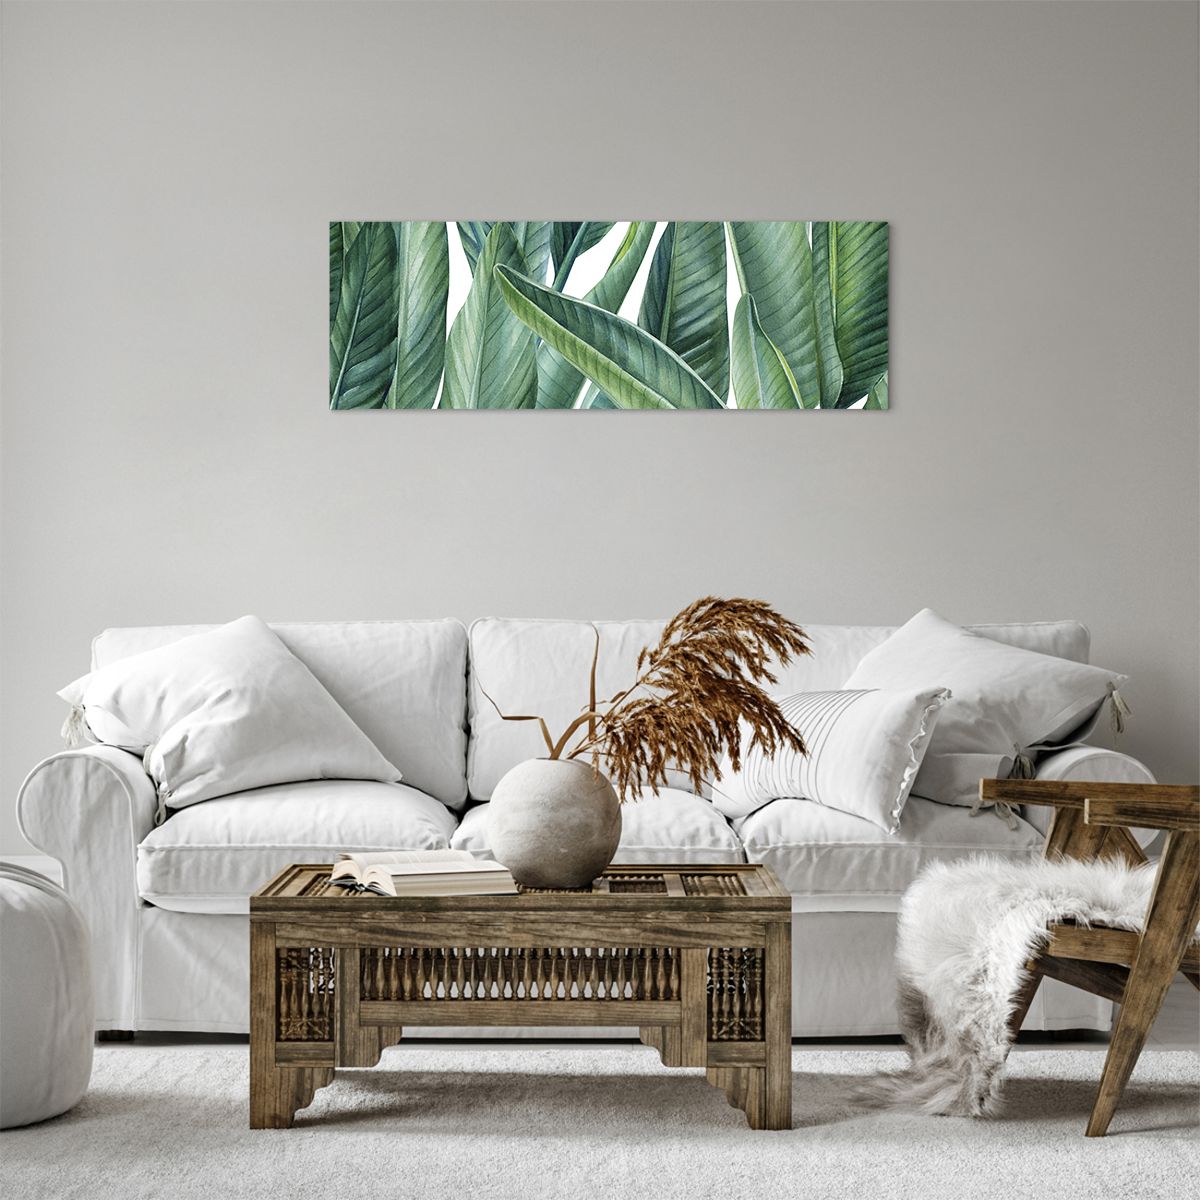 Obrazy na płótnie Zielone Liście, Obrazy na płótnie Roślina Tropikalna, Obrazy na płótnie Natura, Obrazy na płótnie Grafika, Obrazy na płótnie Akwarele